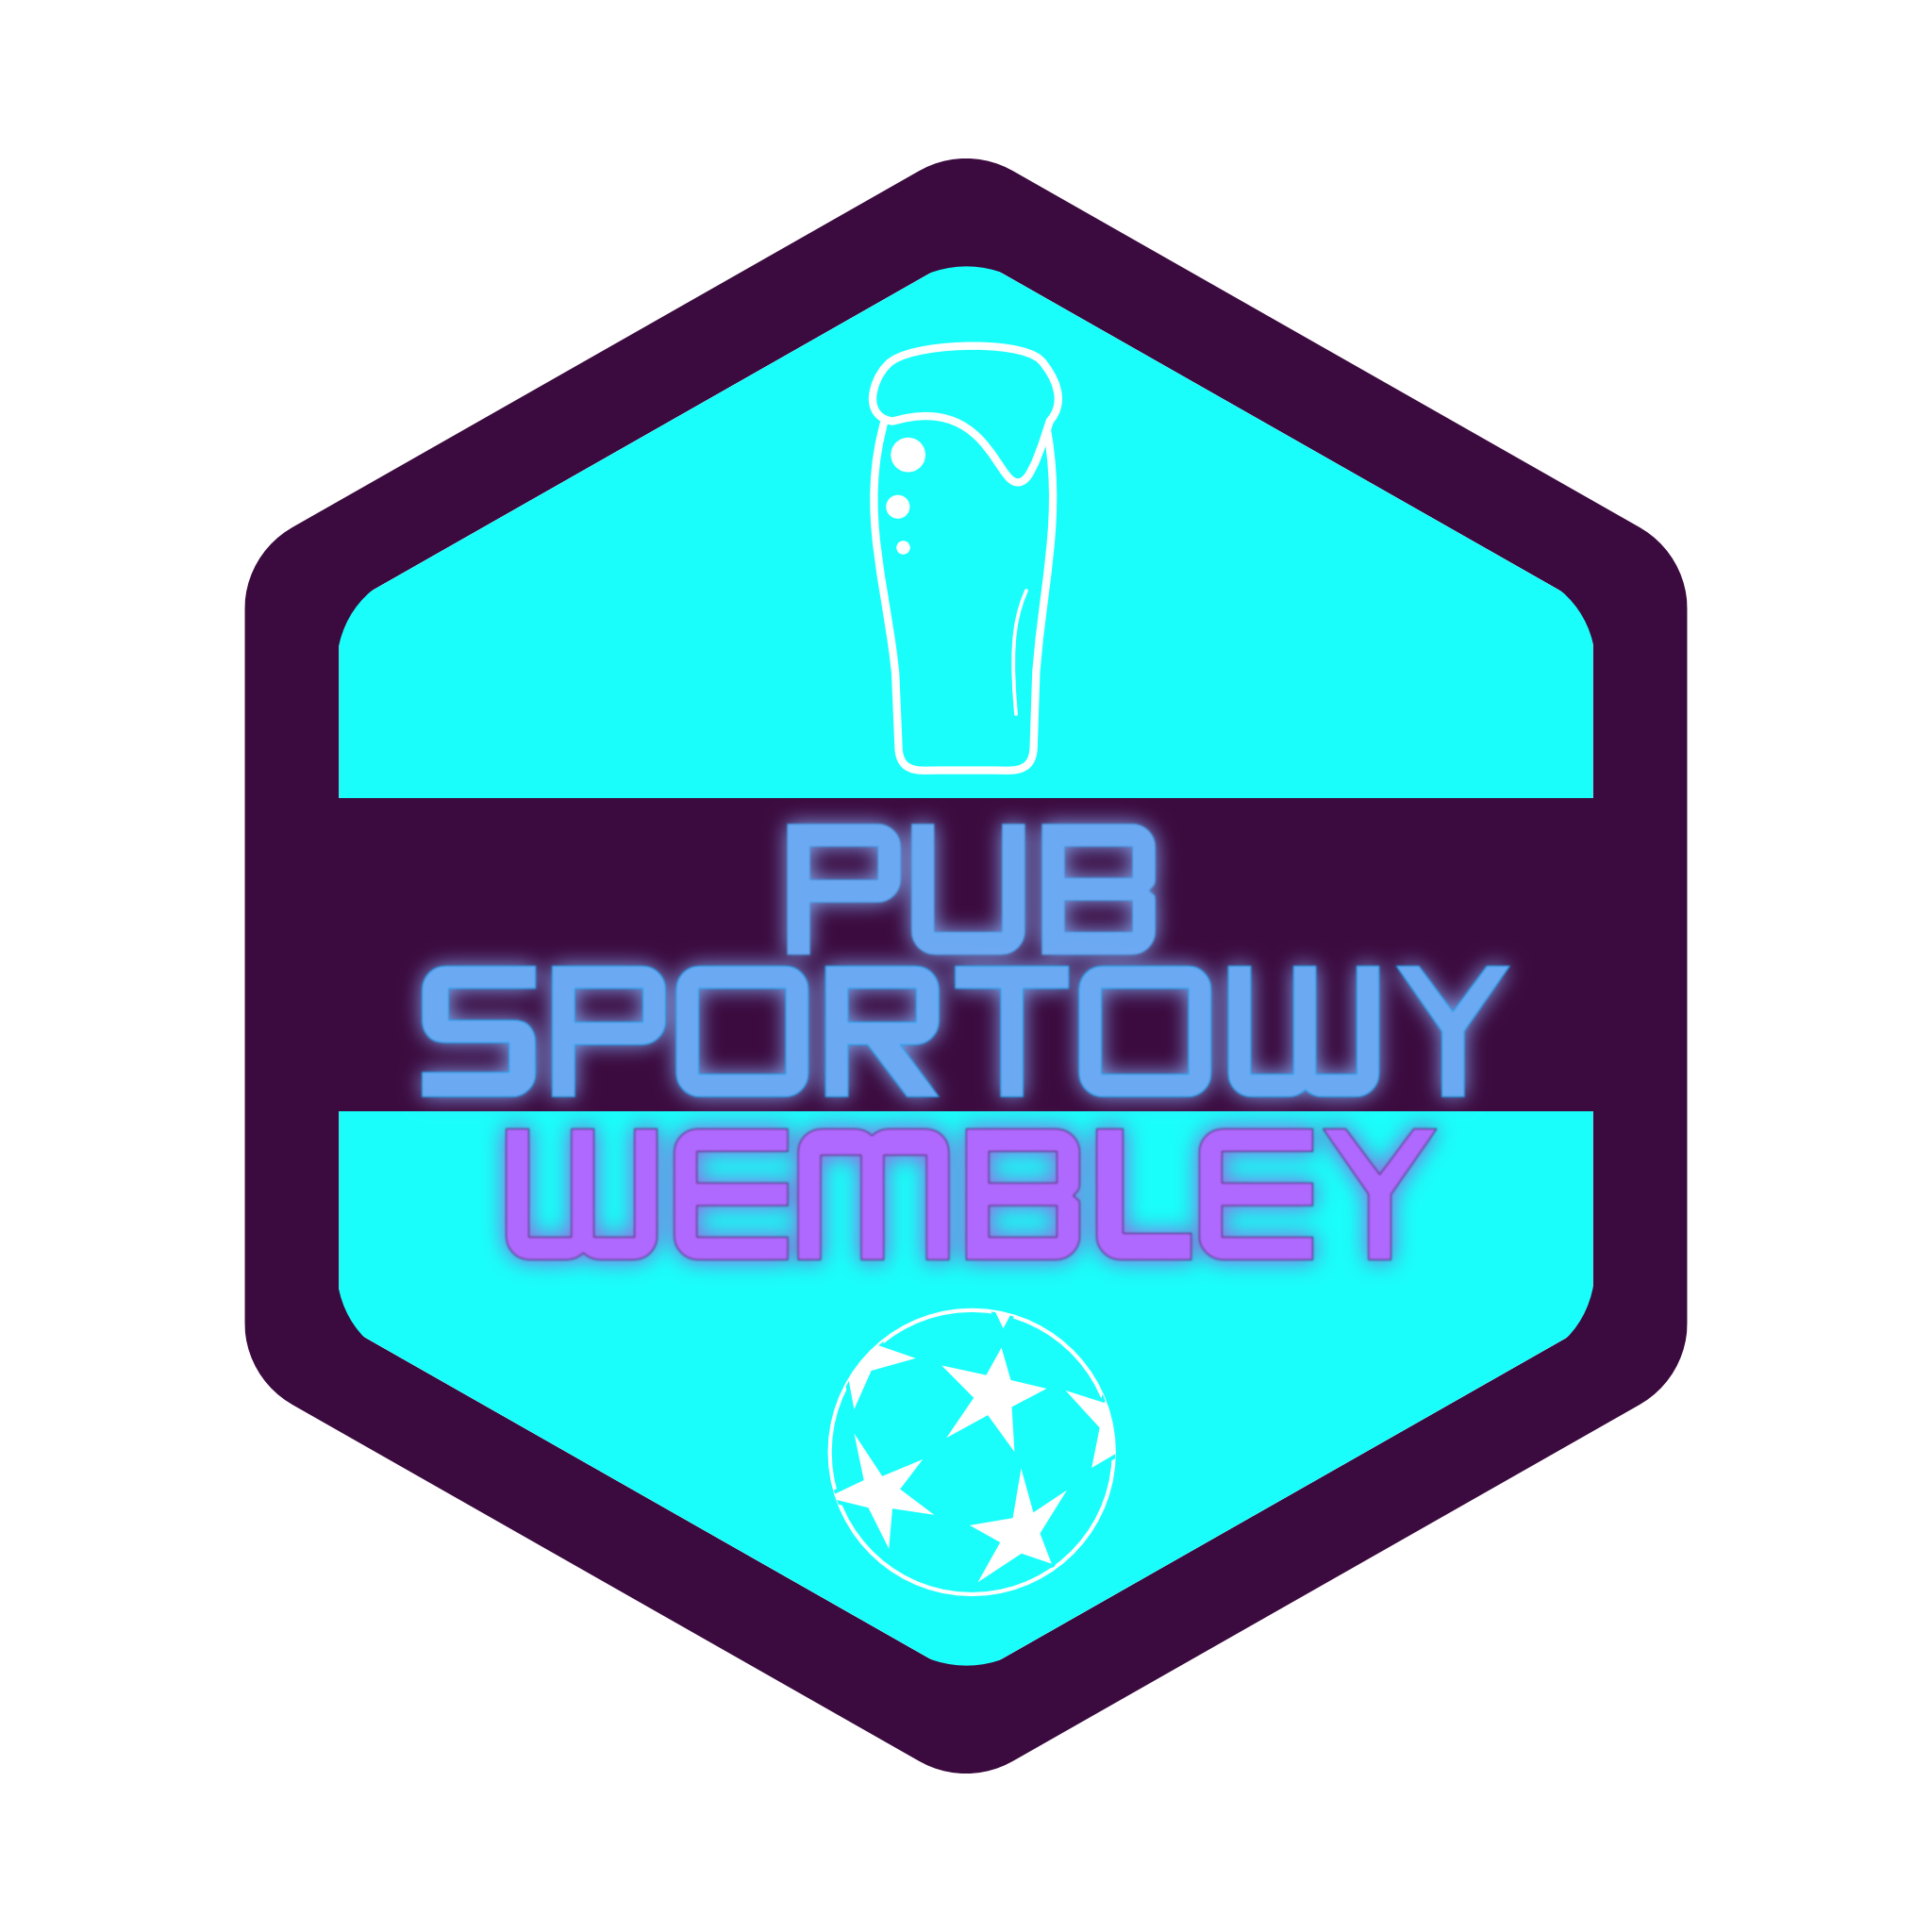 PUB Sportowy Wembley